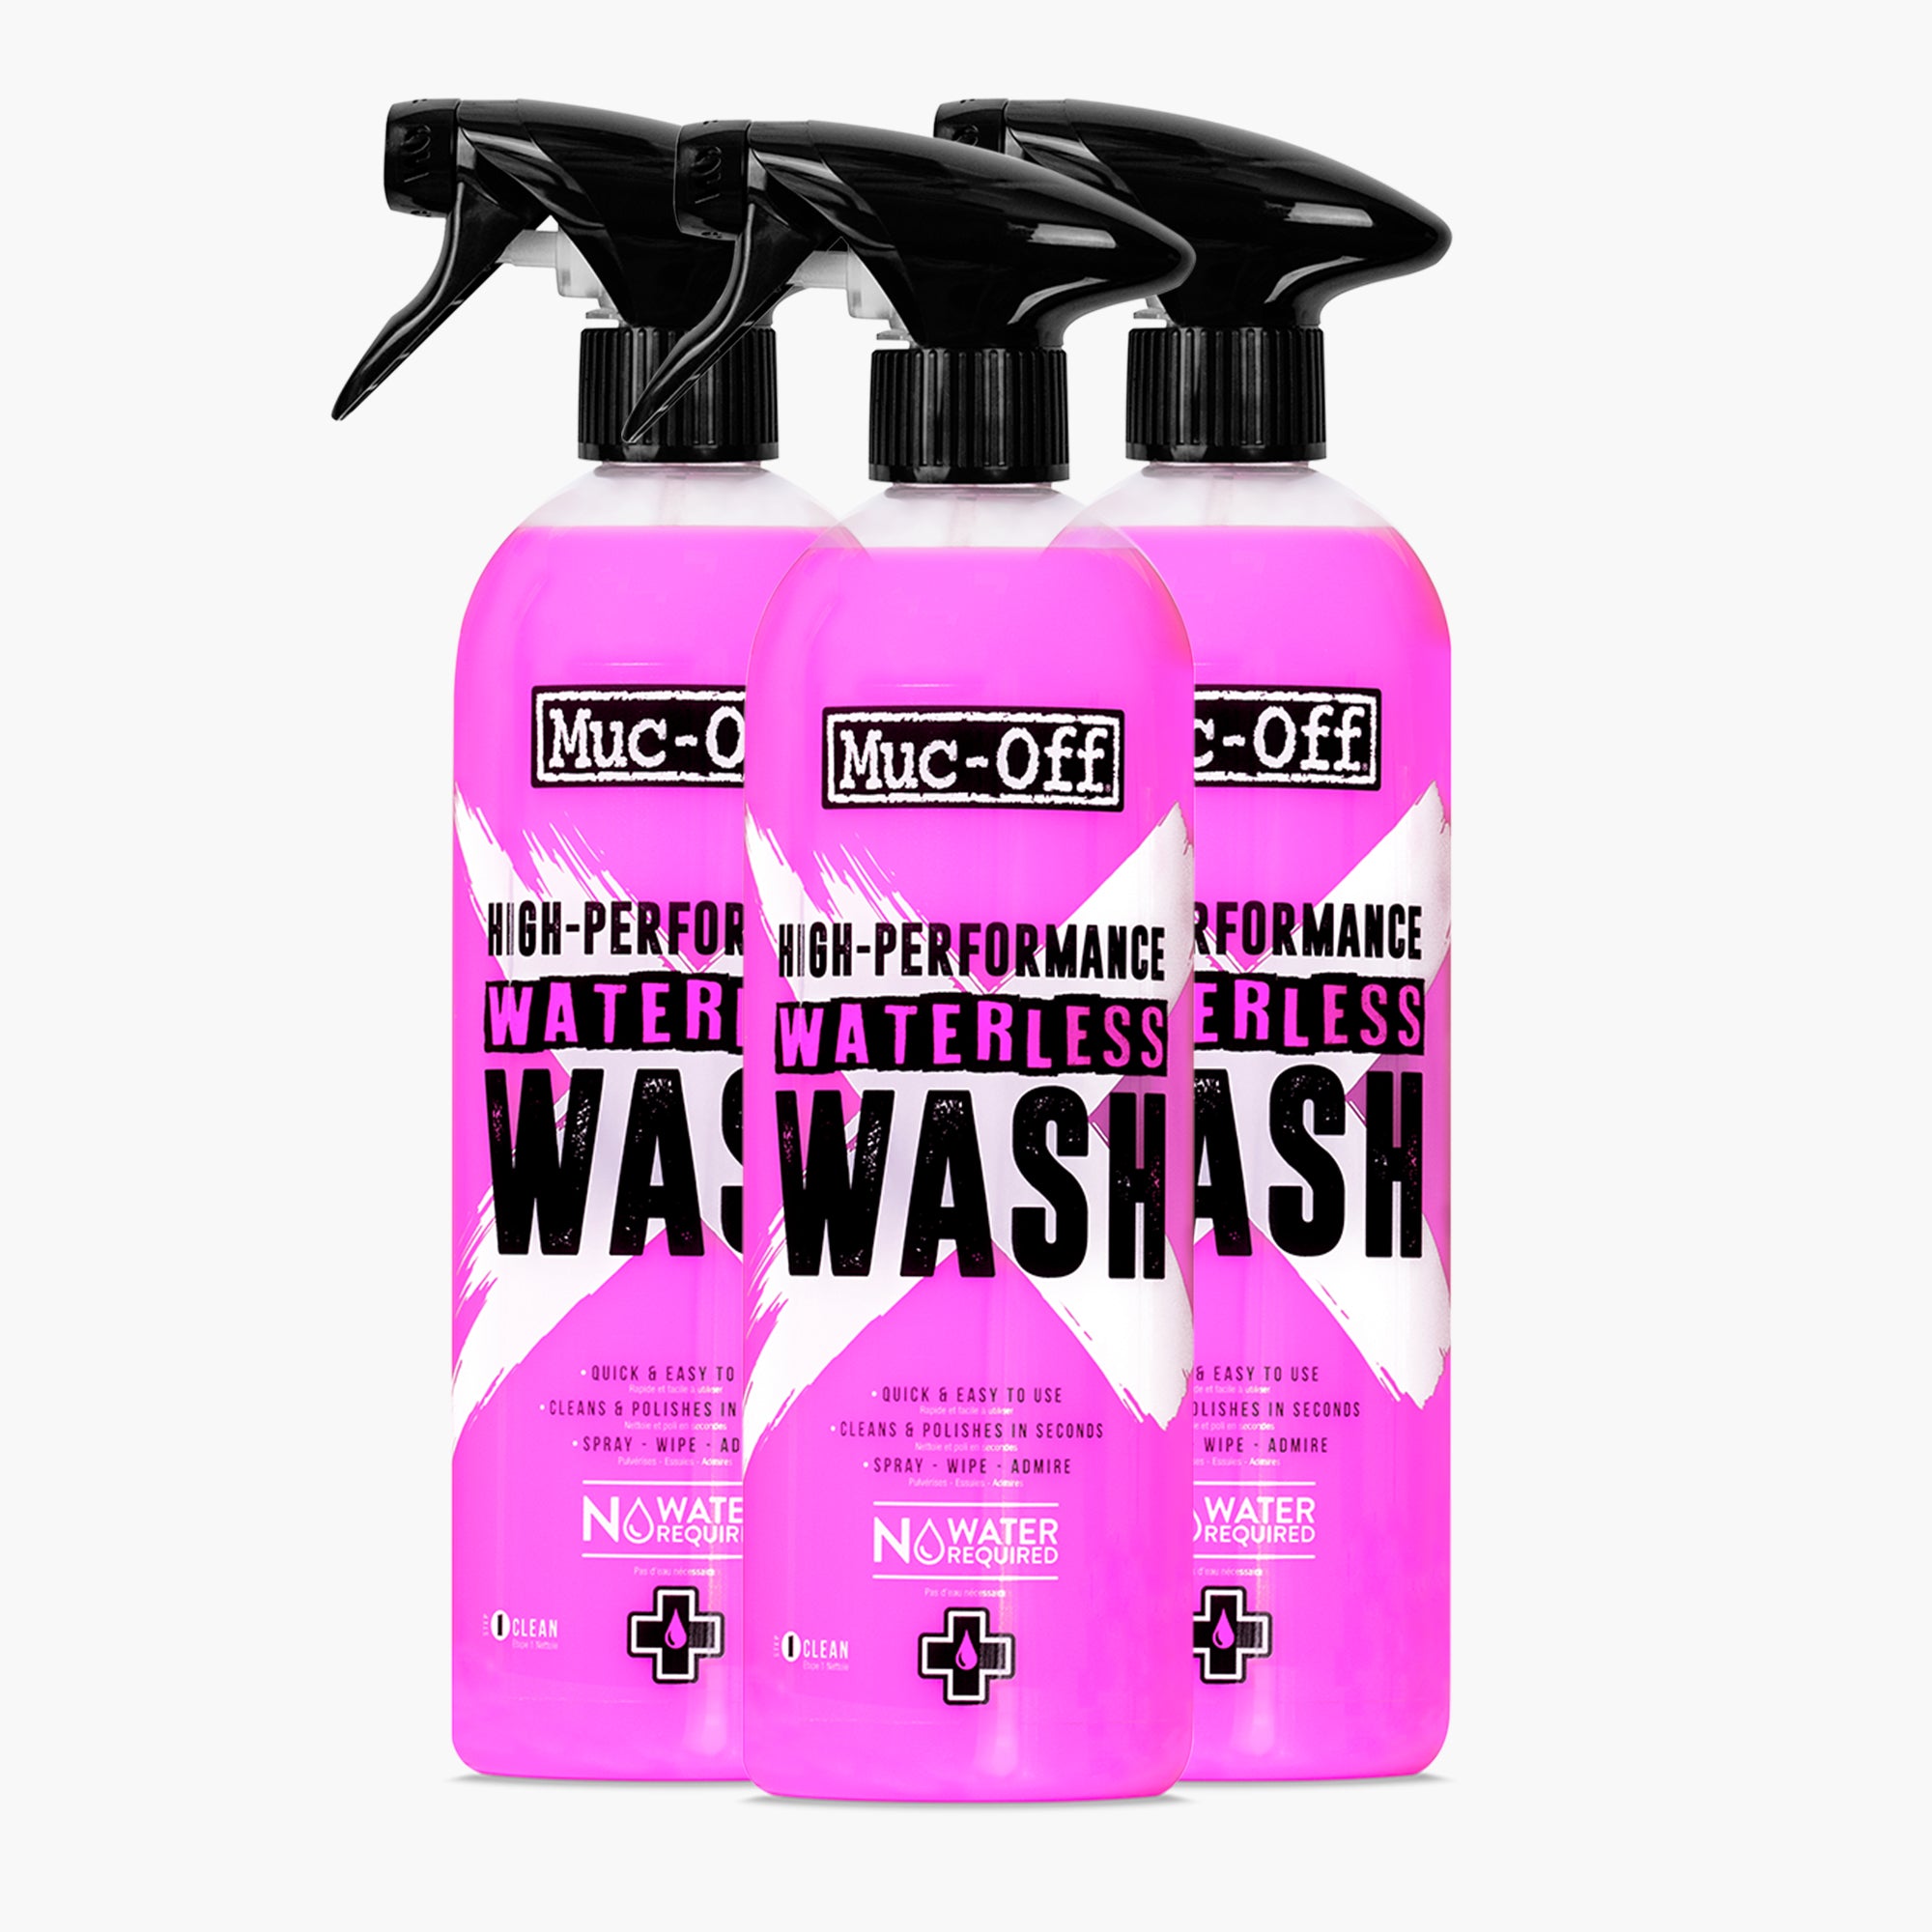 Waterless wash